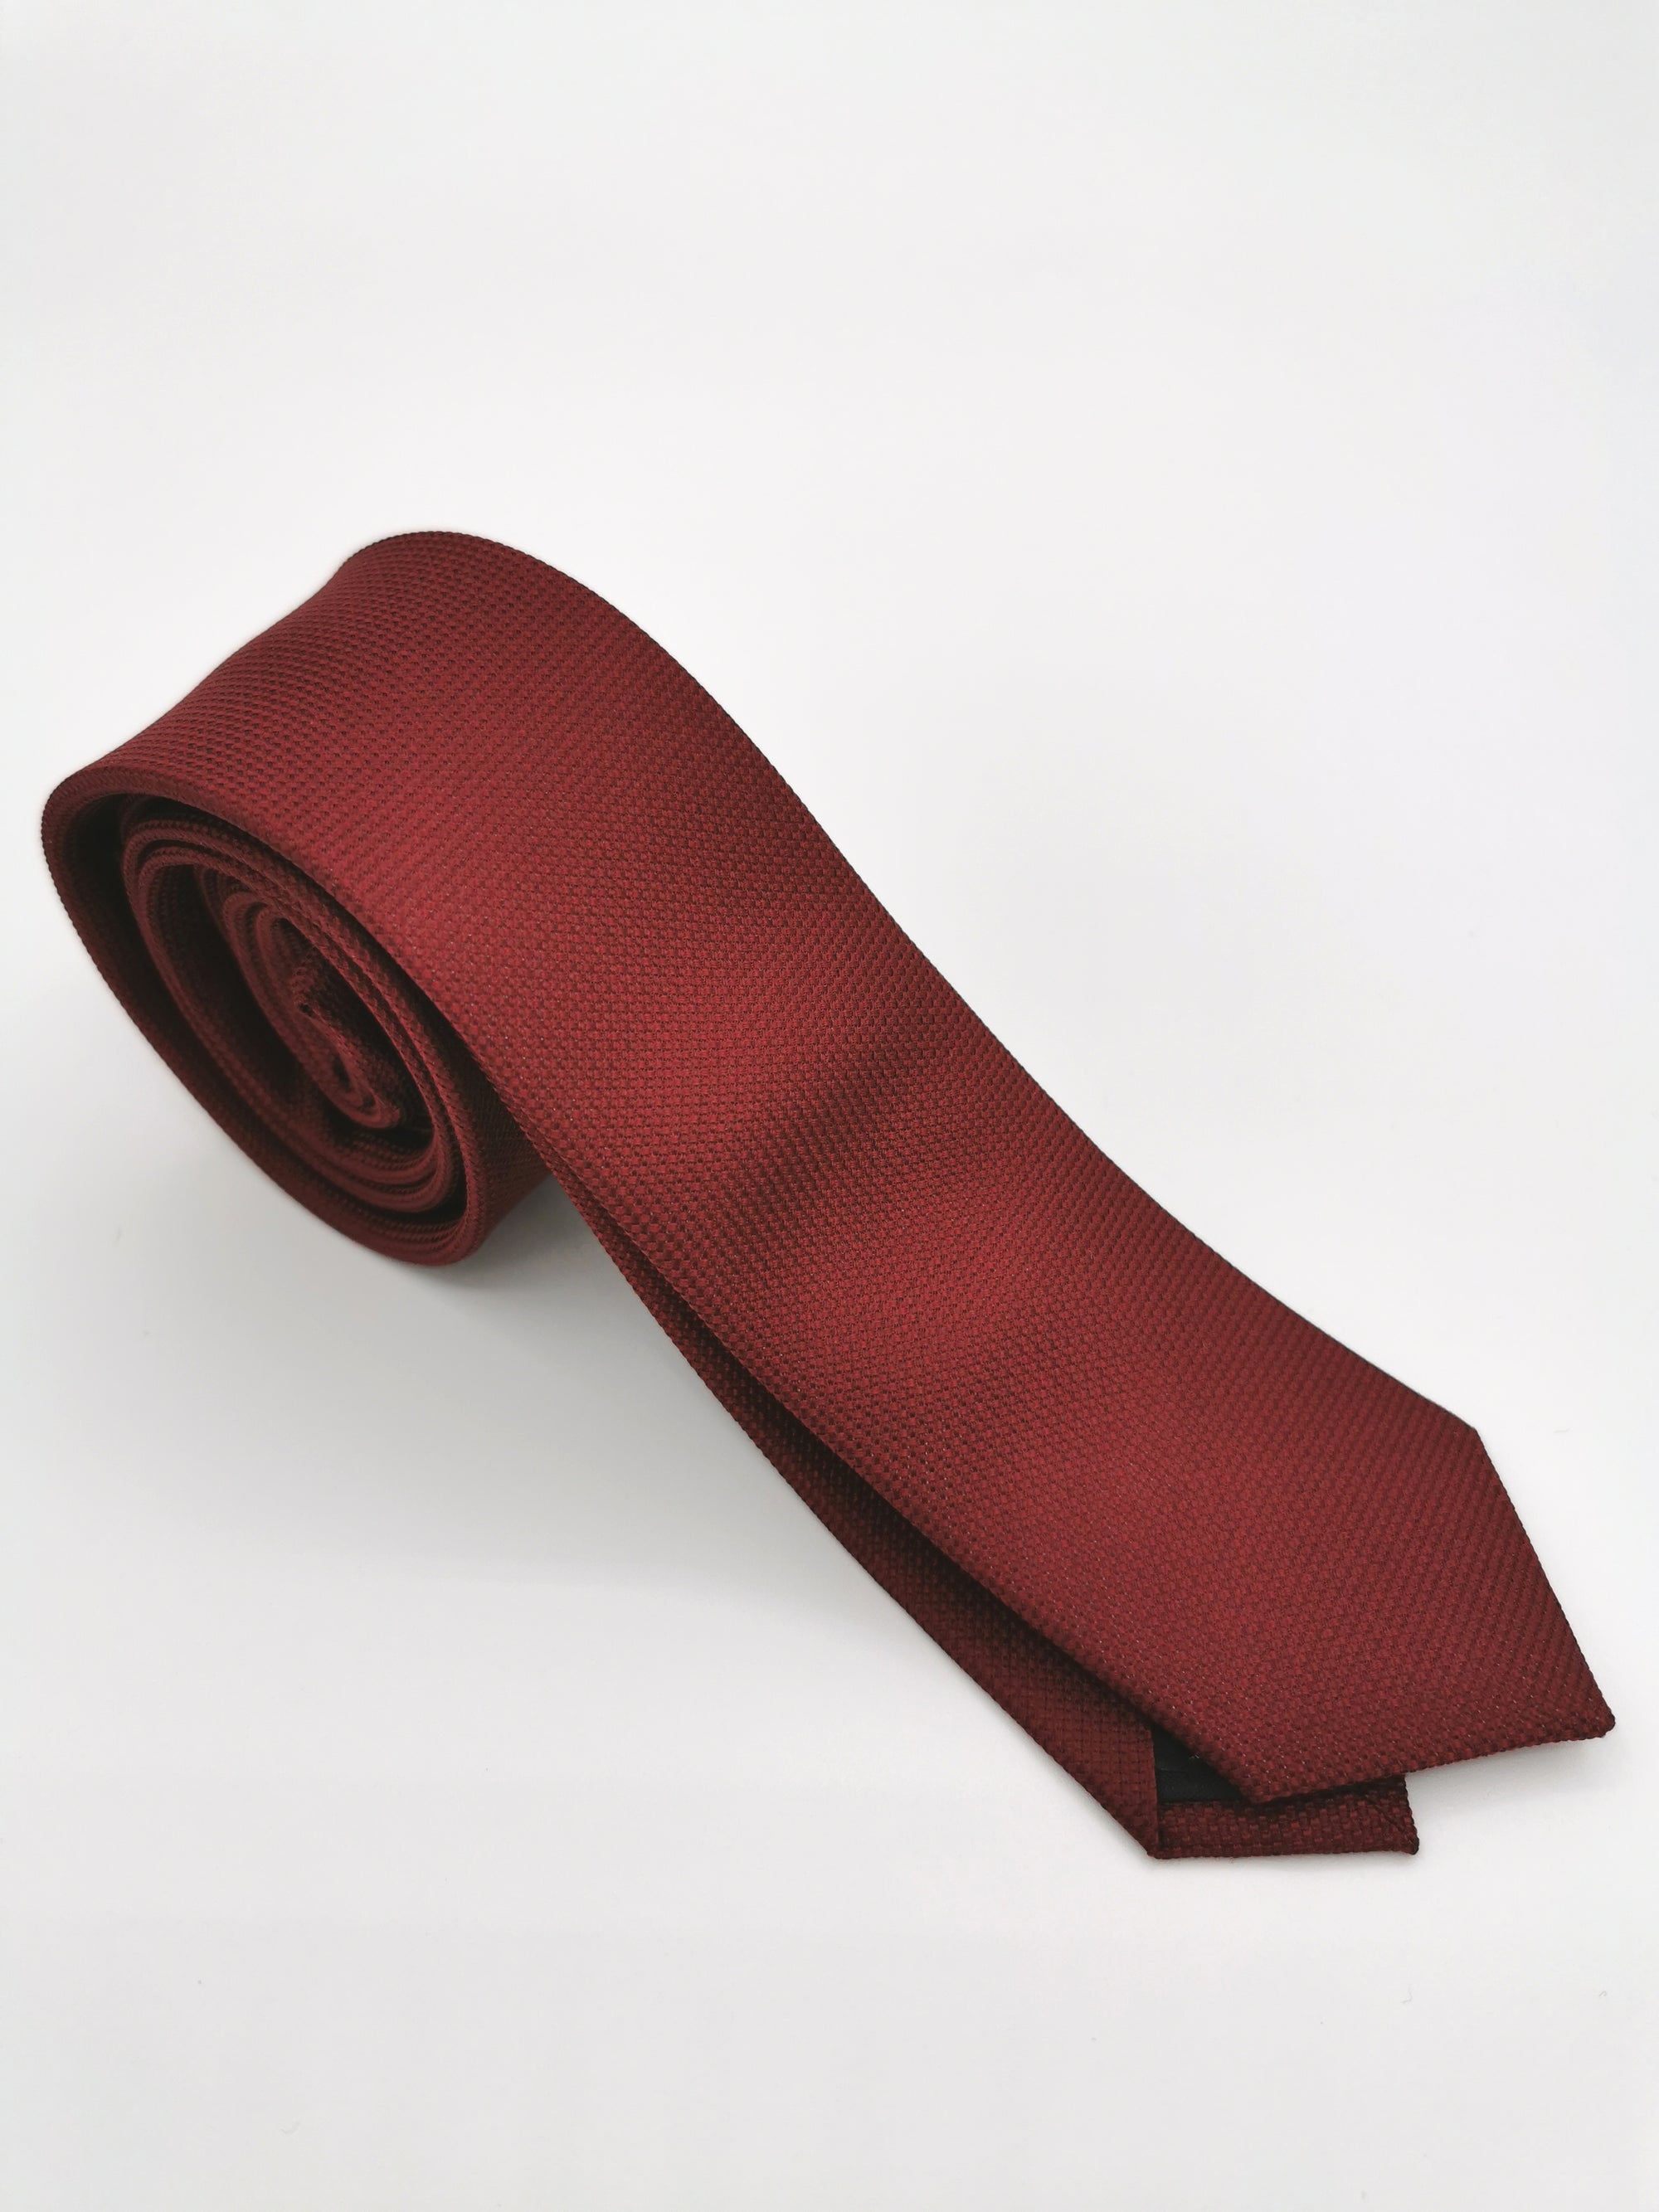 Thin red silk tie